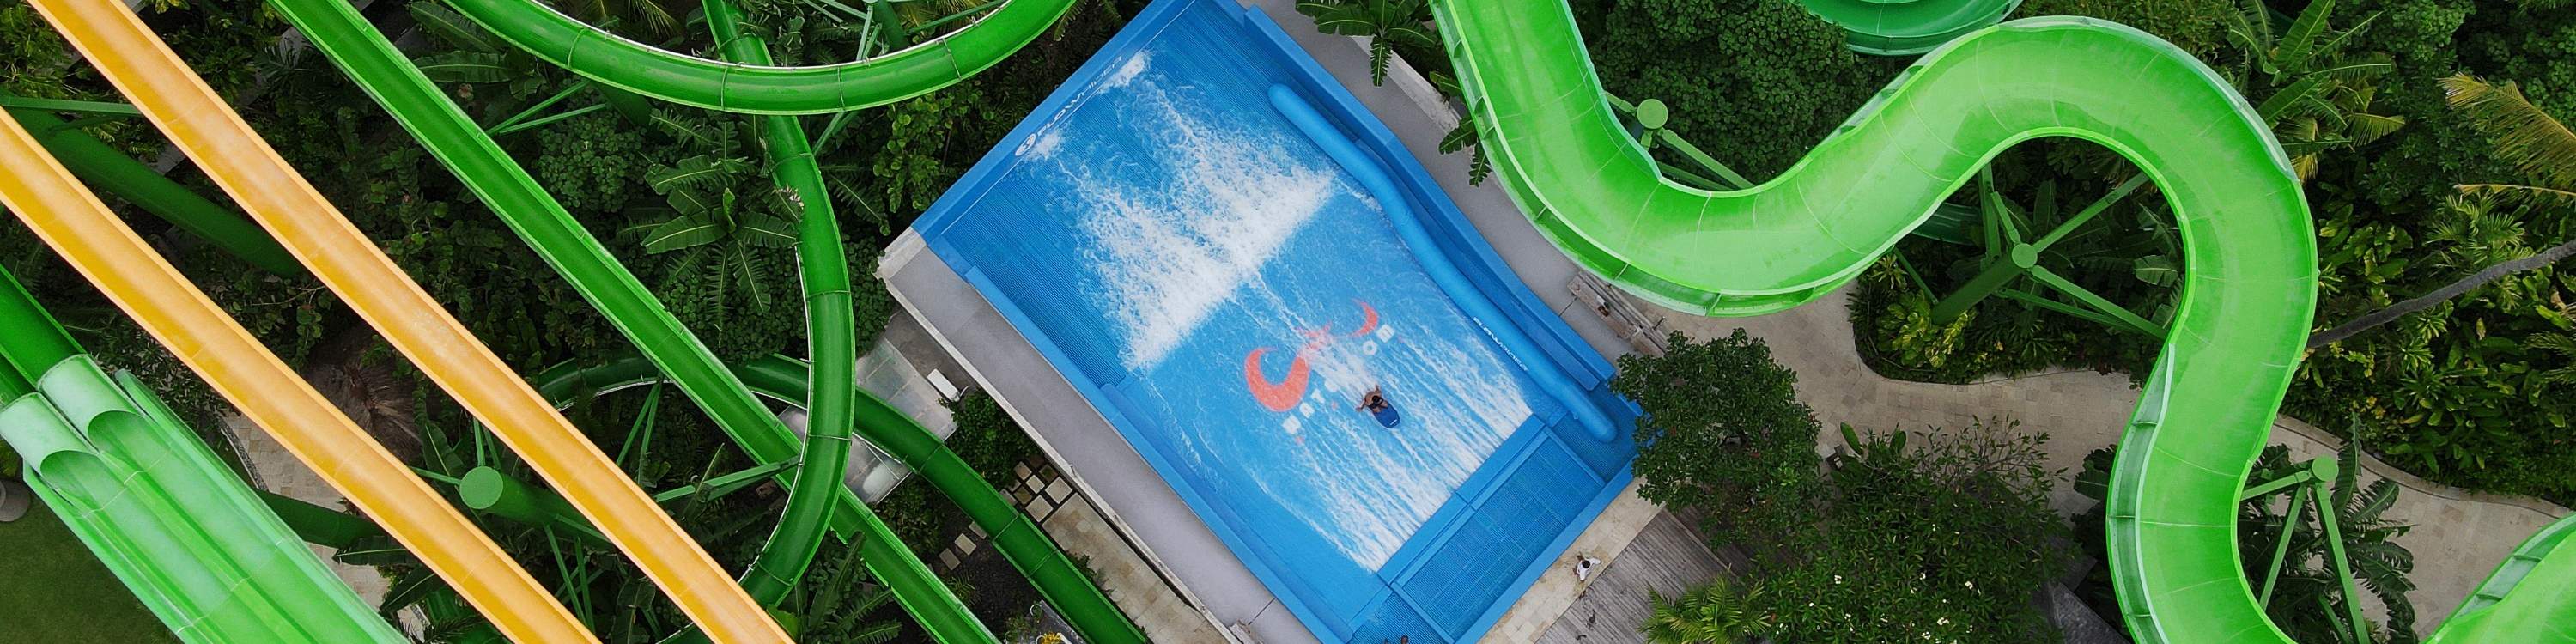 slides at waterbom